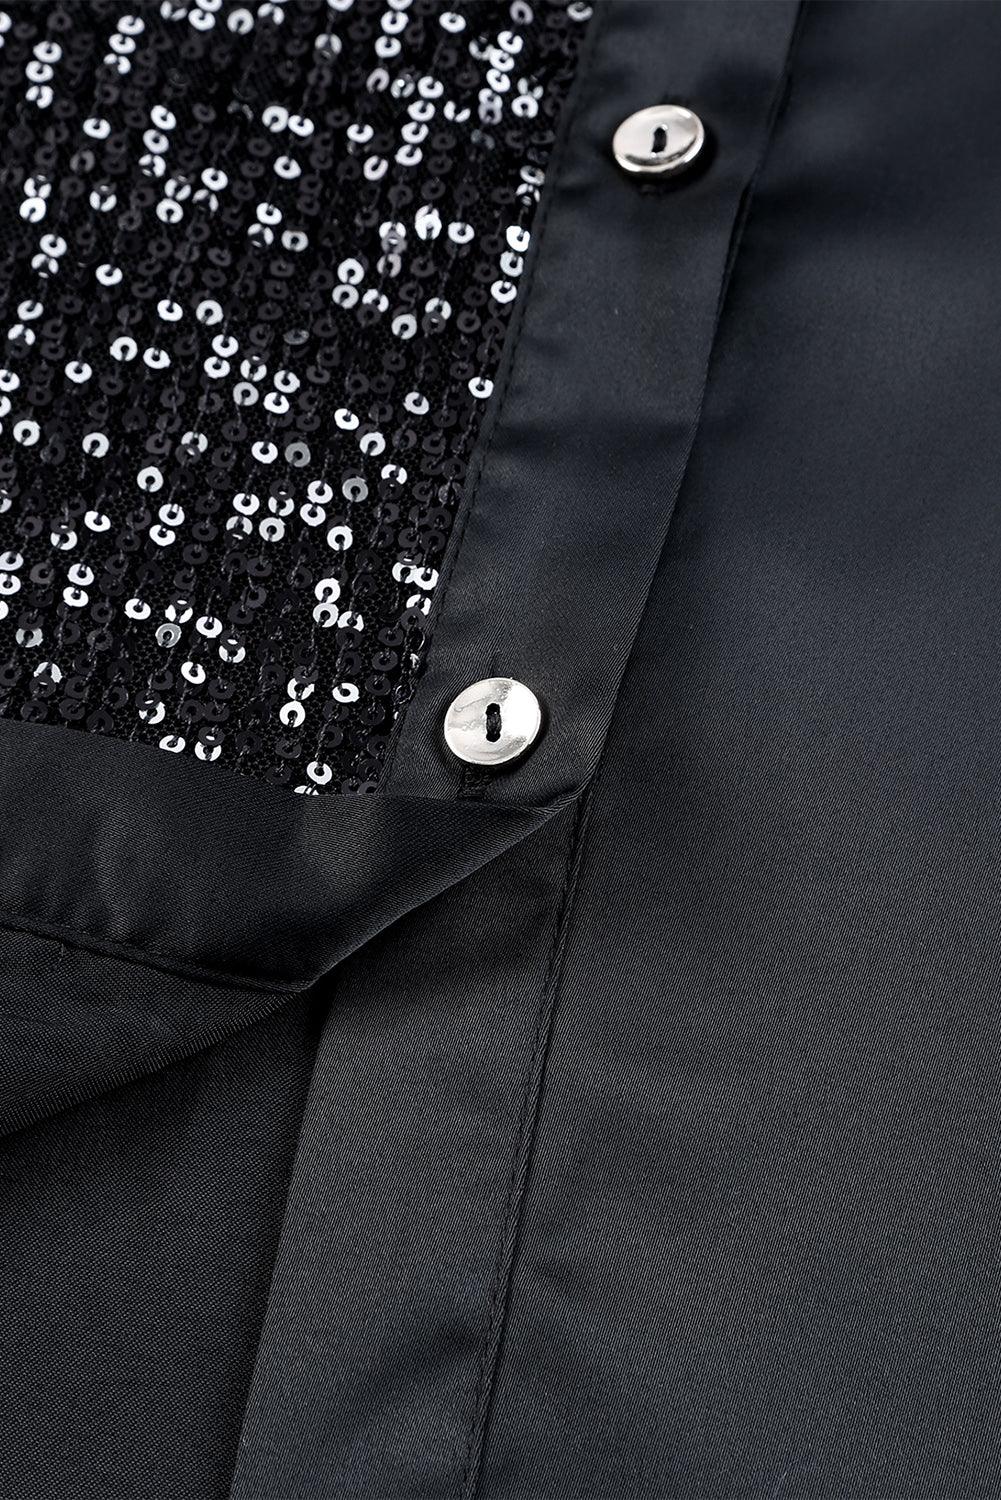 Sequin Button Front High-Low Shirt Dress - BELLATRENDZ